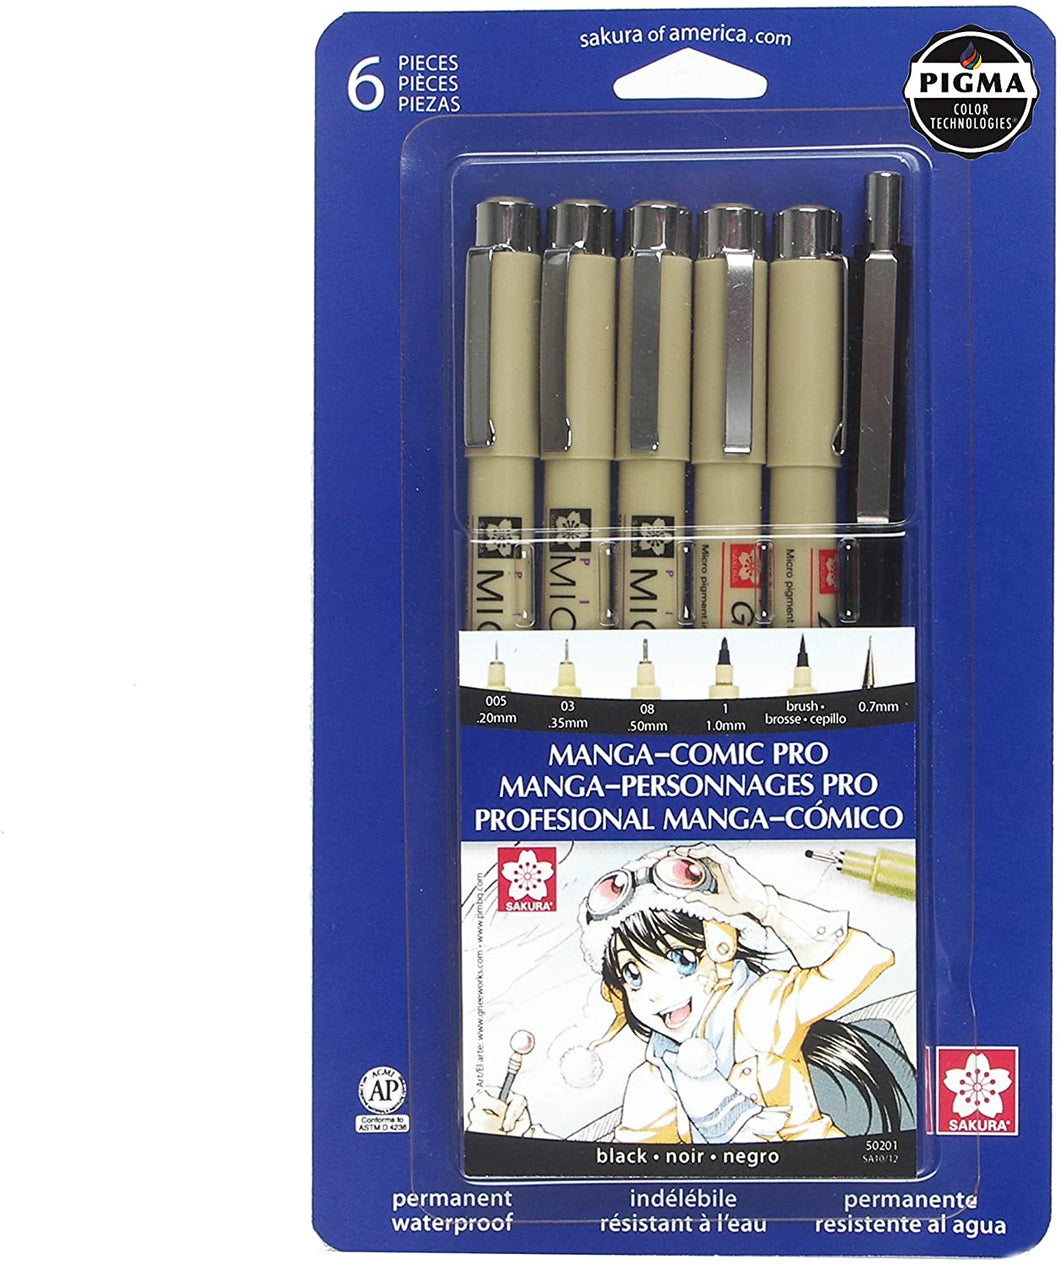 Pigma Manga-Comic Pro Sketching & Inking Sets, 6-Piece Set